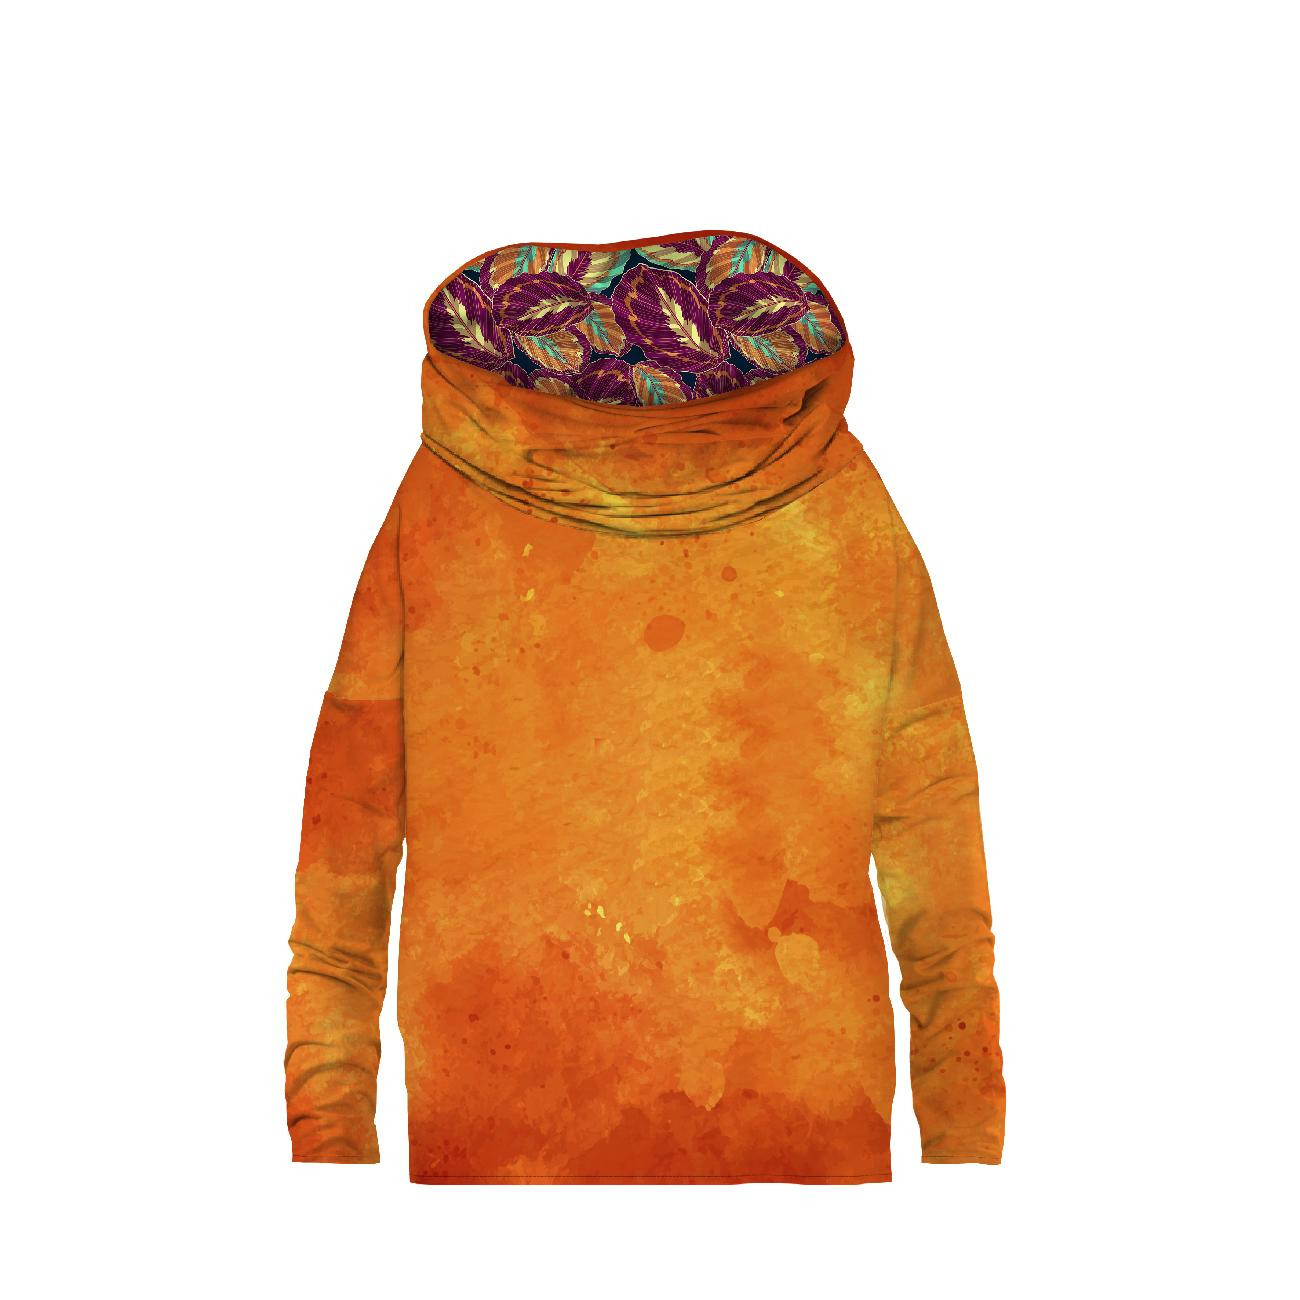 Sweatshirt mit Schalkragen und Fledermausärmel (FURIA) - ORANGE SPECKS / purpur blätter - Nähset